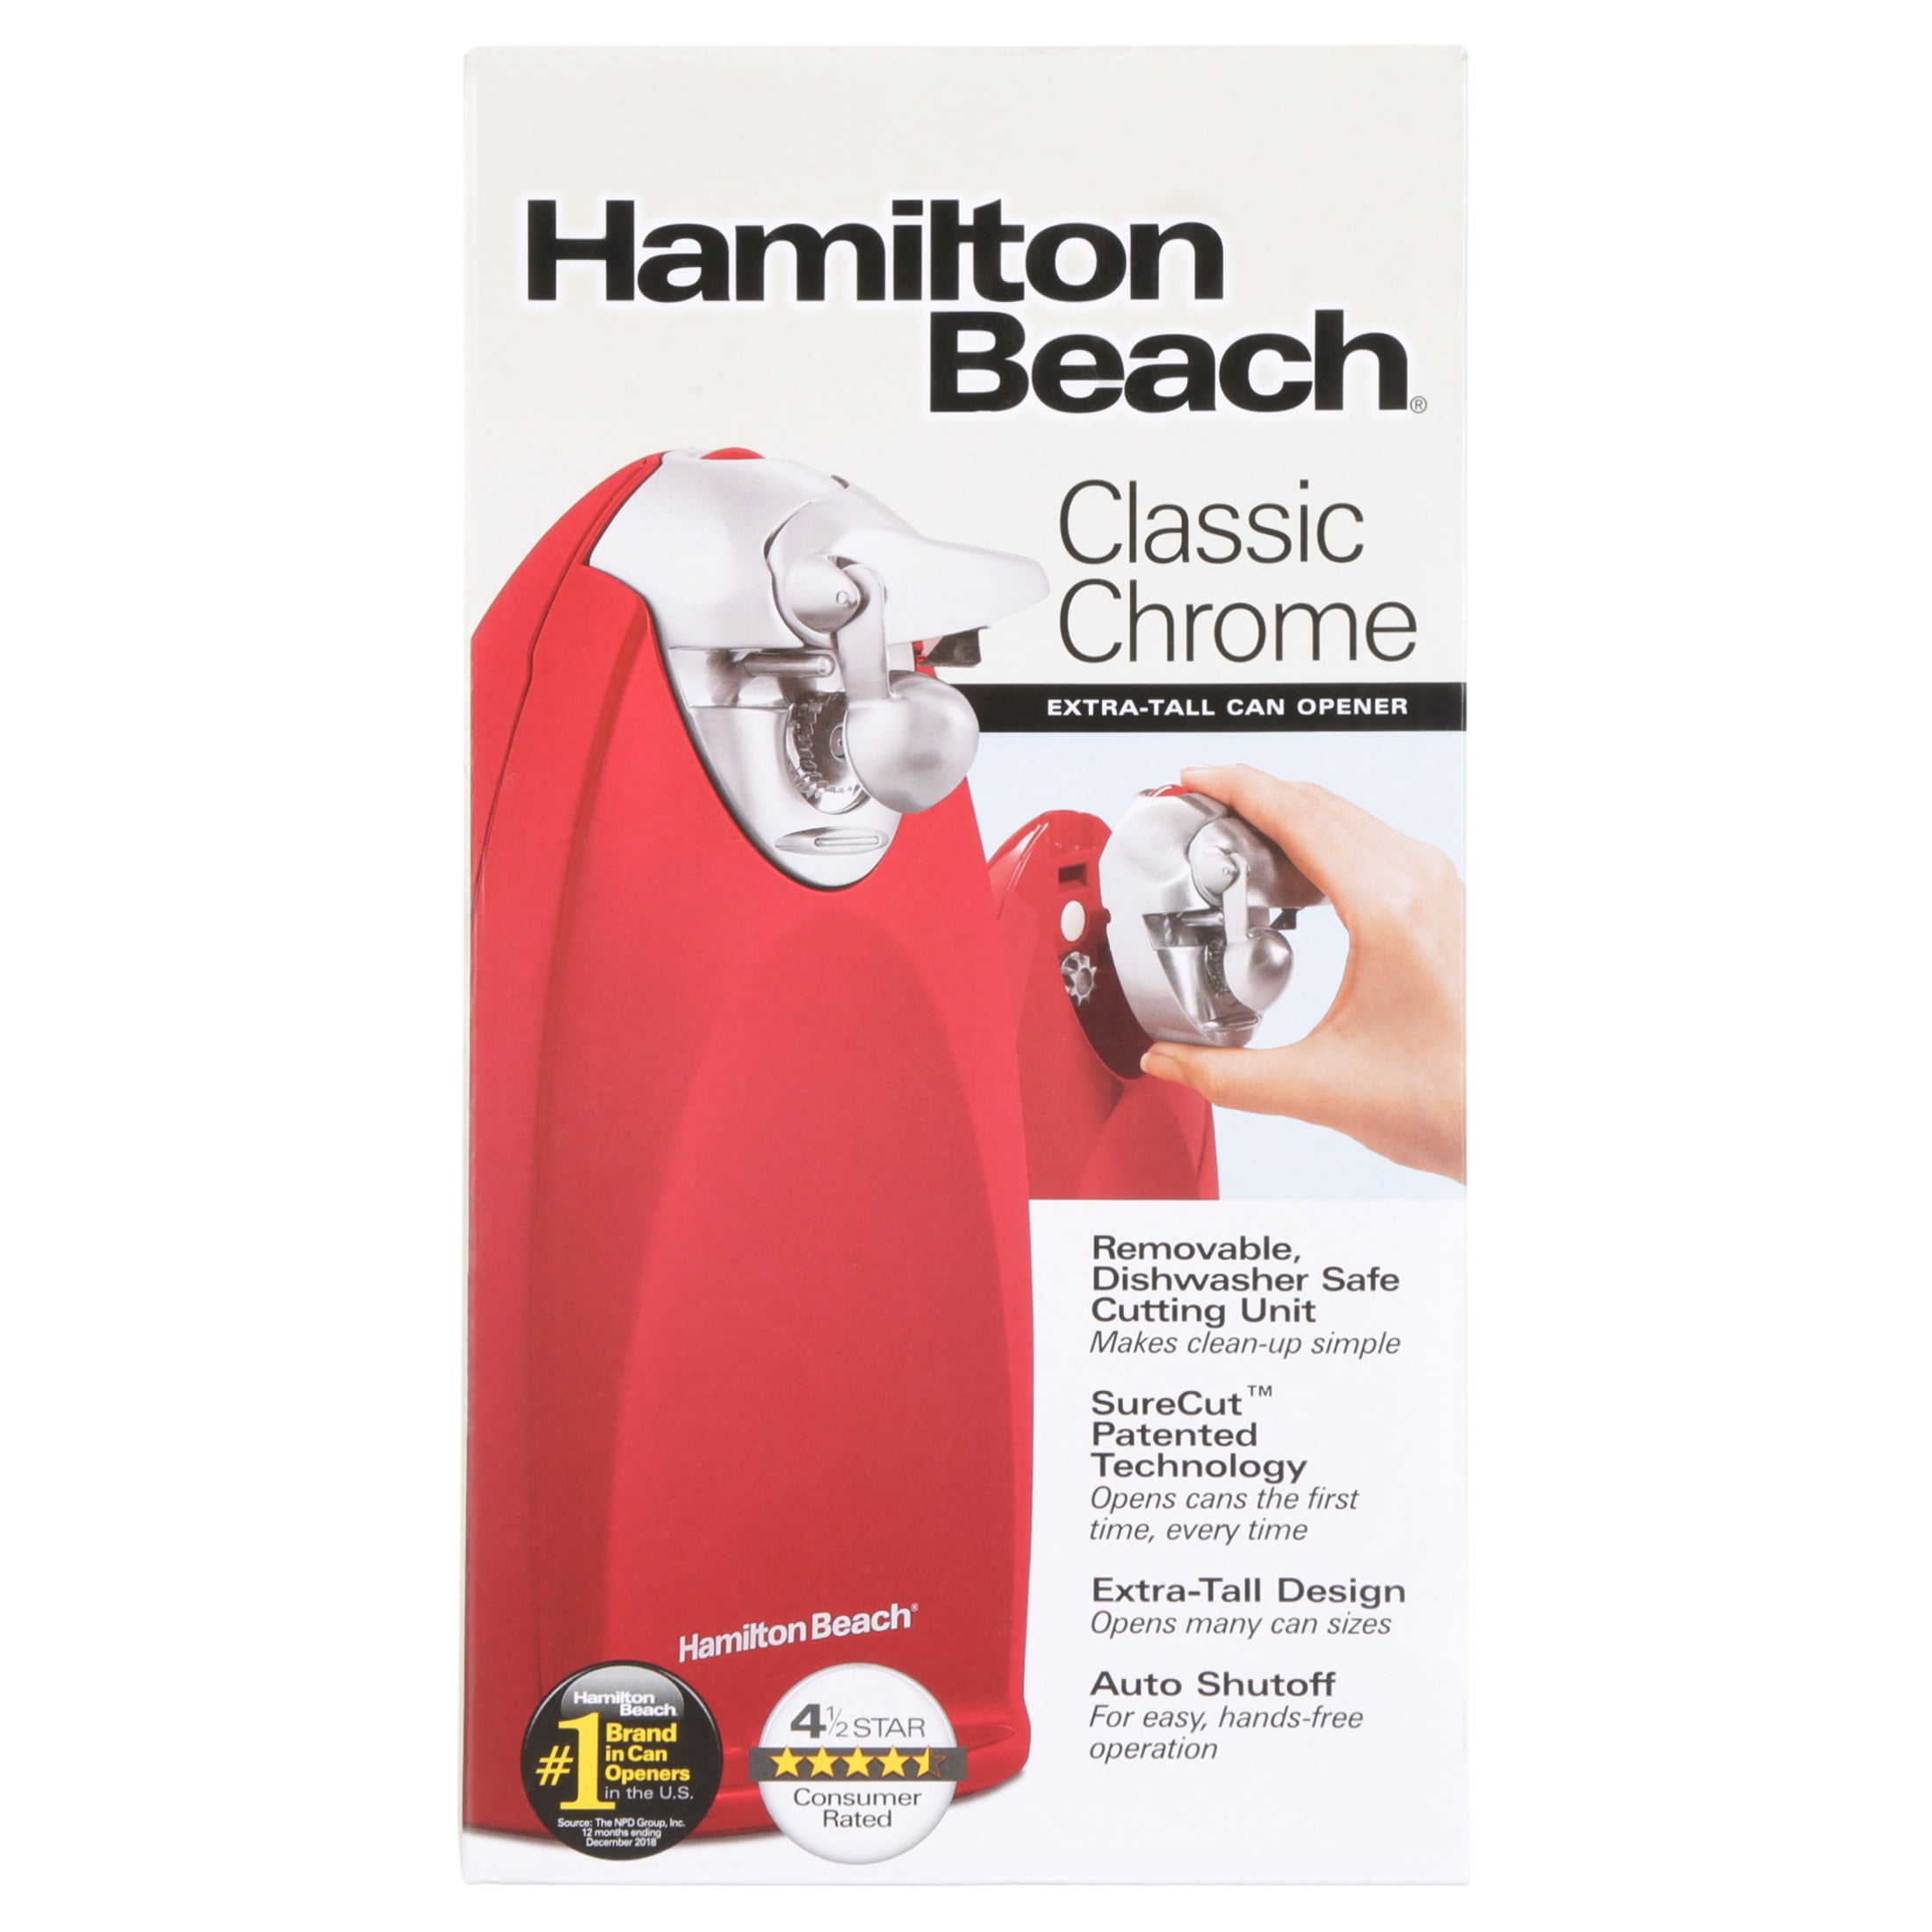 Hamilton Beach Brands Inc. 76388R Ensemble Electric Can Opener Red Chrome  (8D)